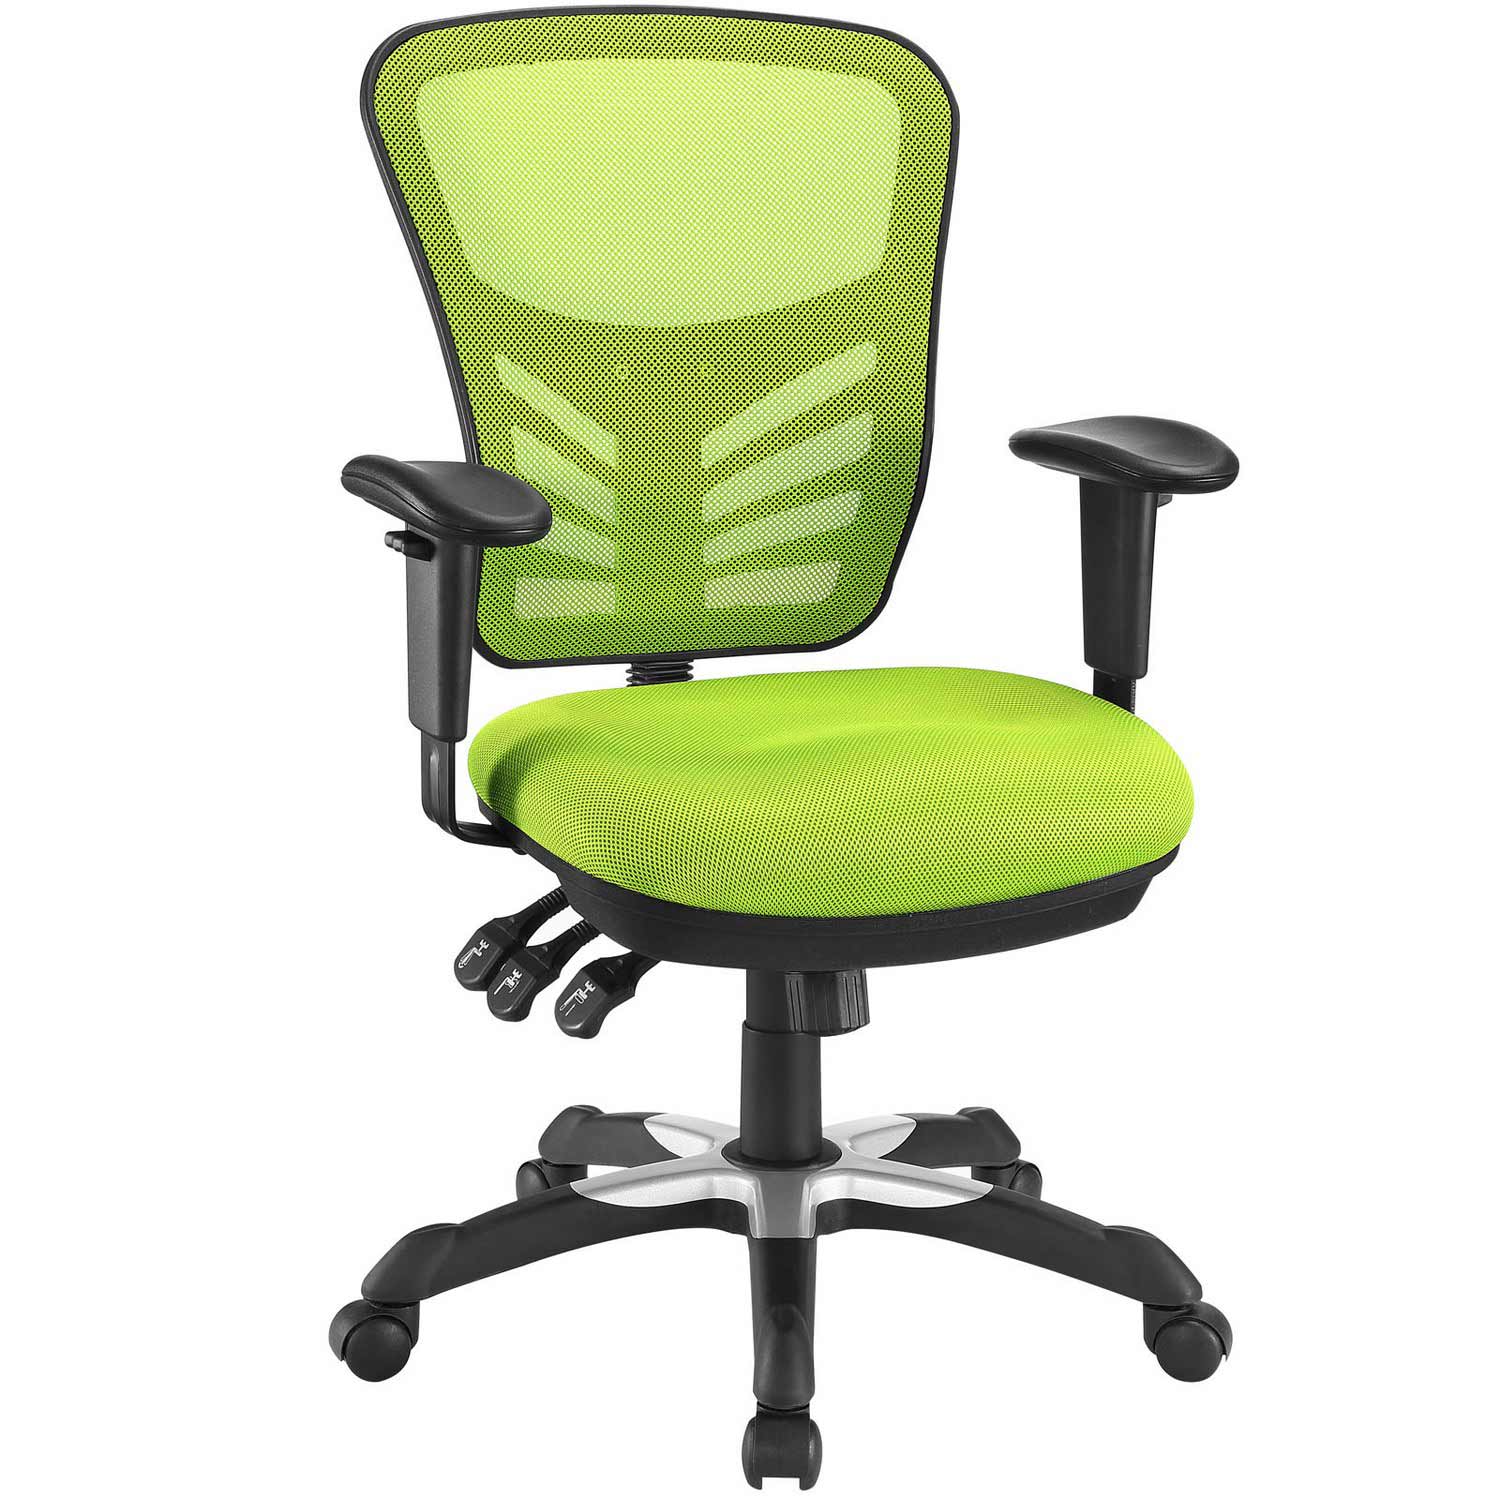 Modway Articulate Mesh Office Chair - Green